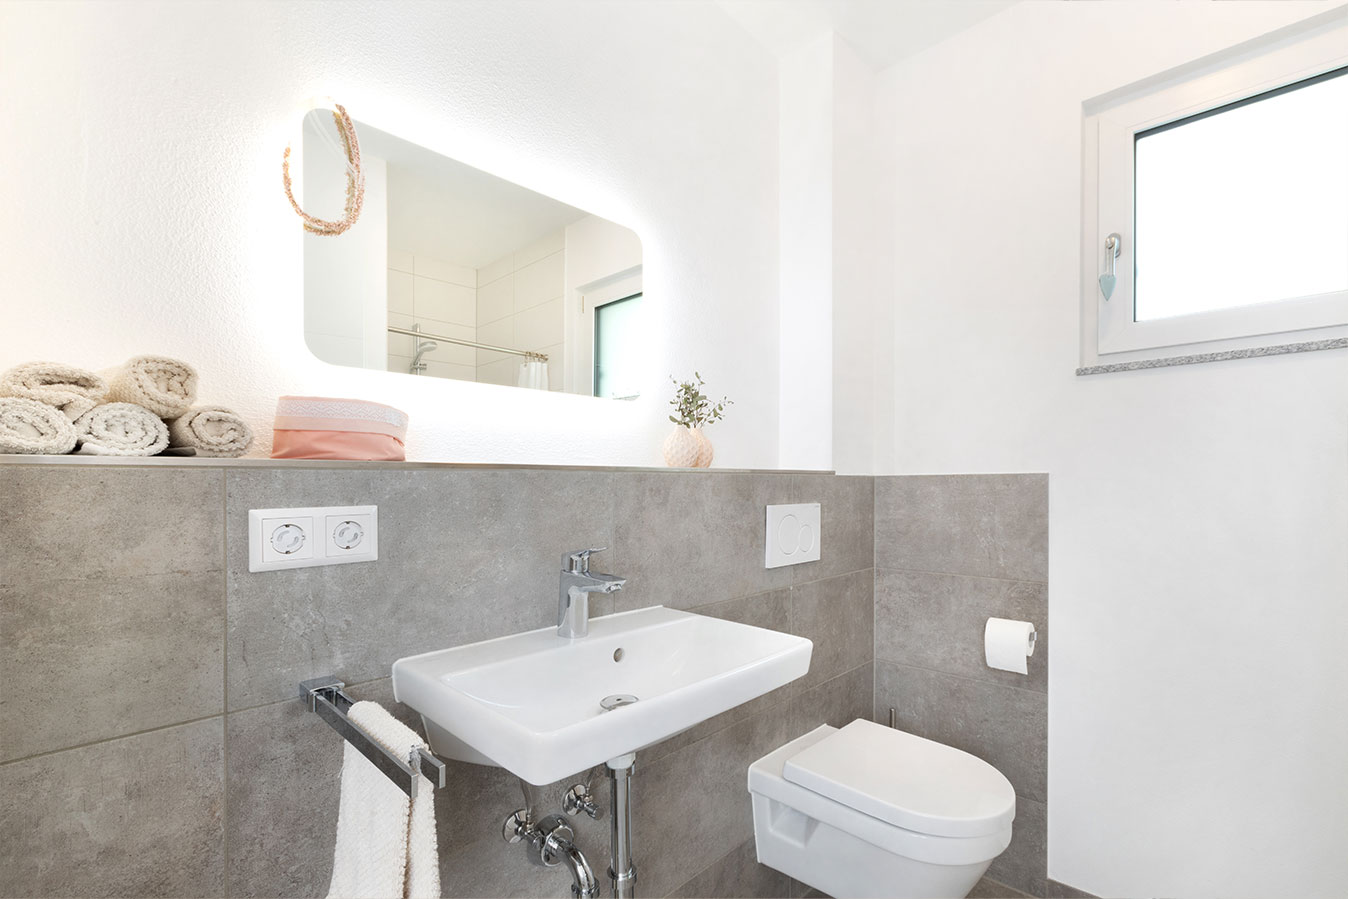 U304-Einfamilienhaus-esszimmer-gaeste-bad-toilette